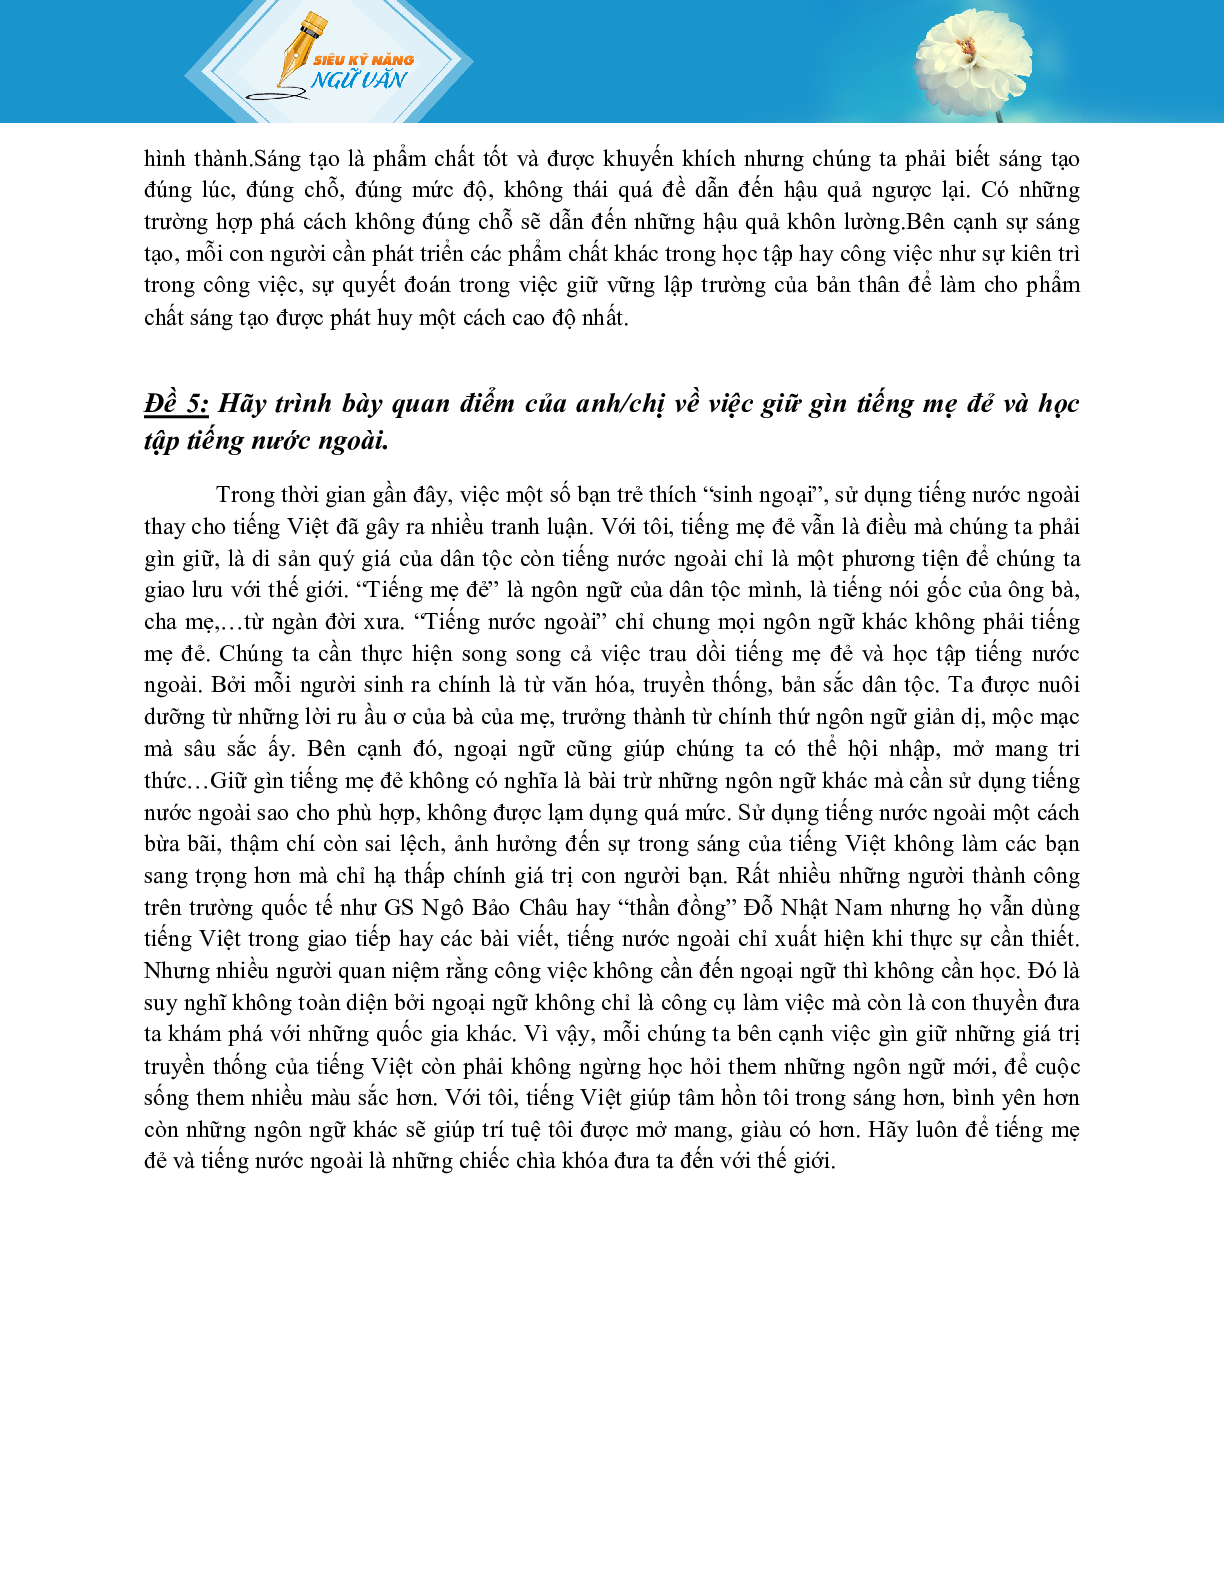 TỔNG HỢP 40 ĐỀ VĂN NGHỊ LUẬN XÃ HỘI CÓ CHỌN LỌC (trang 5)